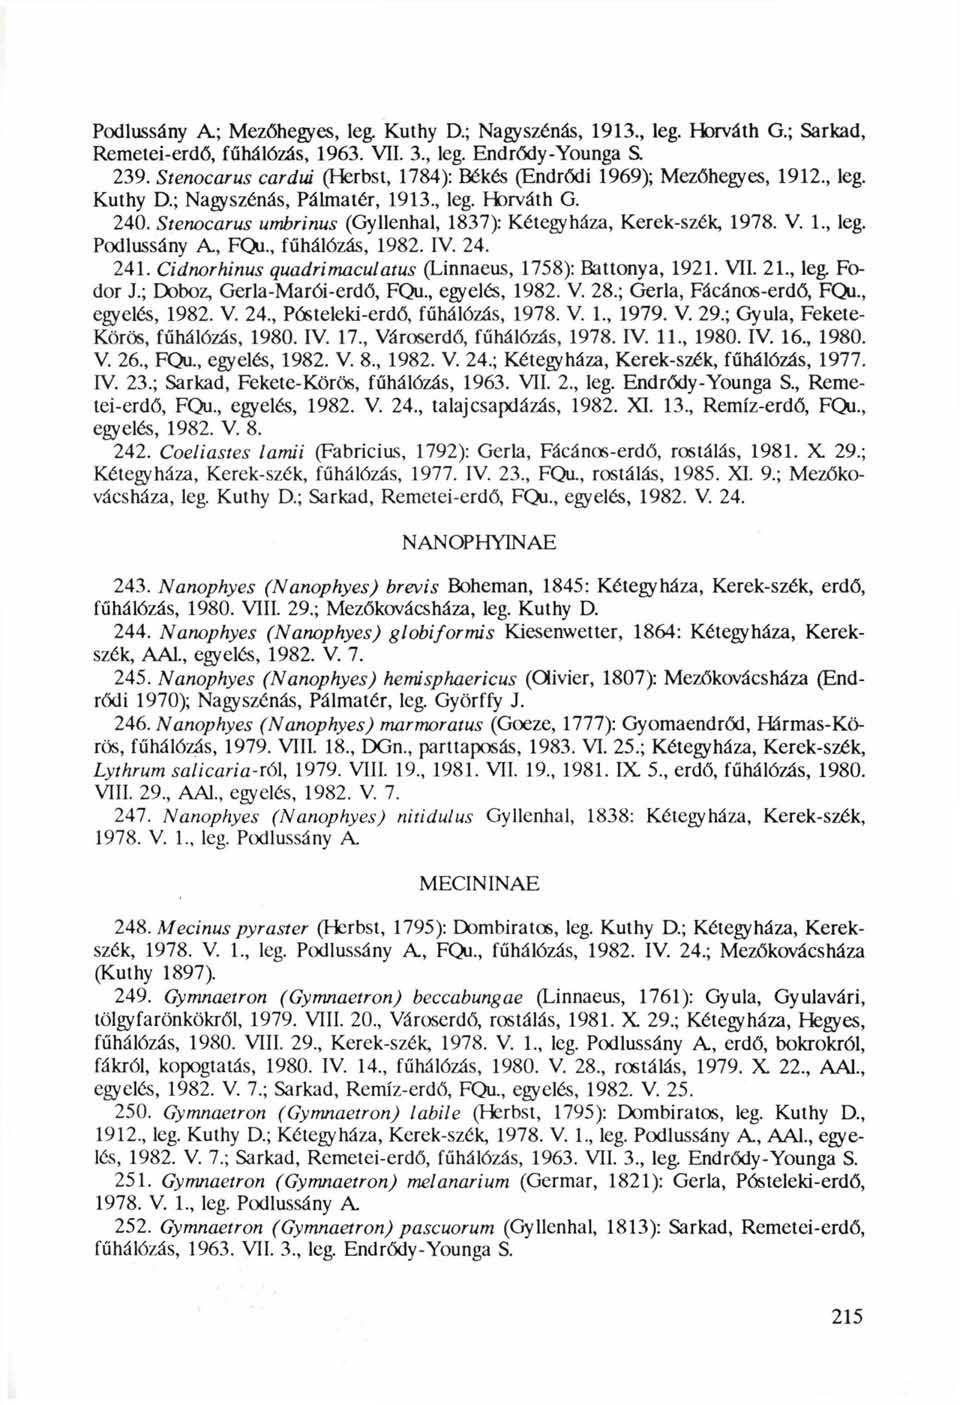 Podlussány A; Mezőhegyes, leg. Kuthy D.; Nagyszénás, 1913, leg. Horváth G.; Sarkad, Remetei-erdő, fűhálózás, 1963. VII. 3, leg. Endrődy-Younga S. 239.